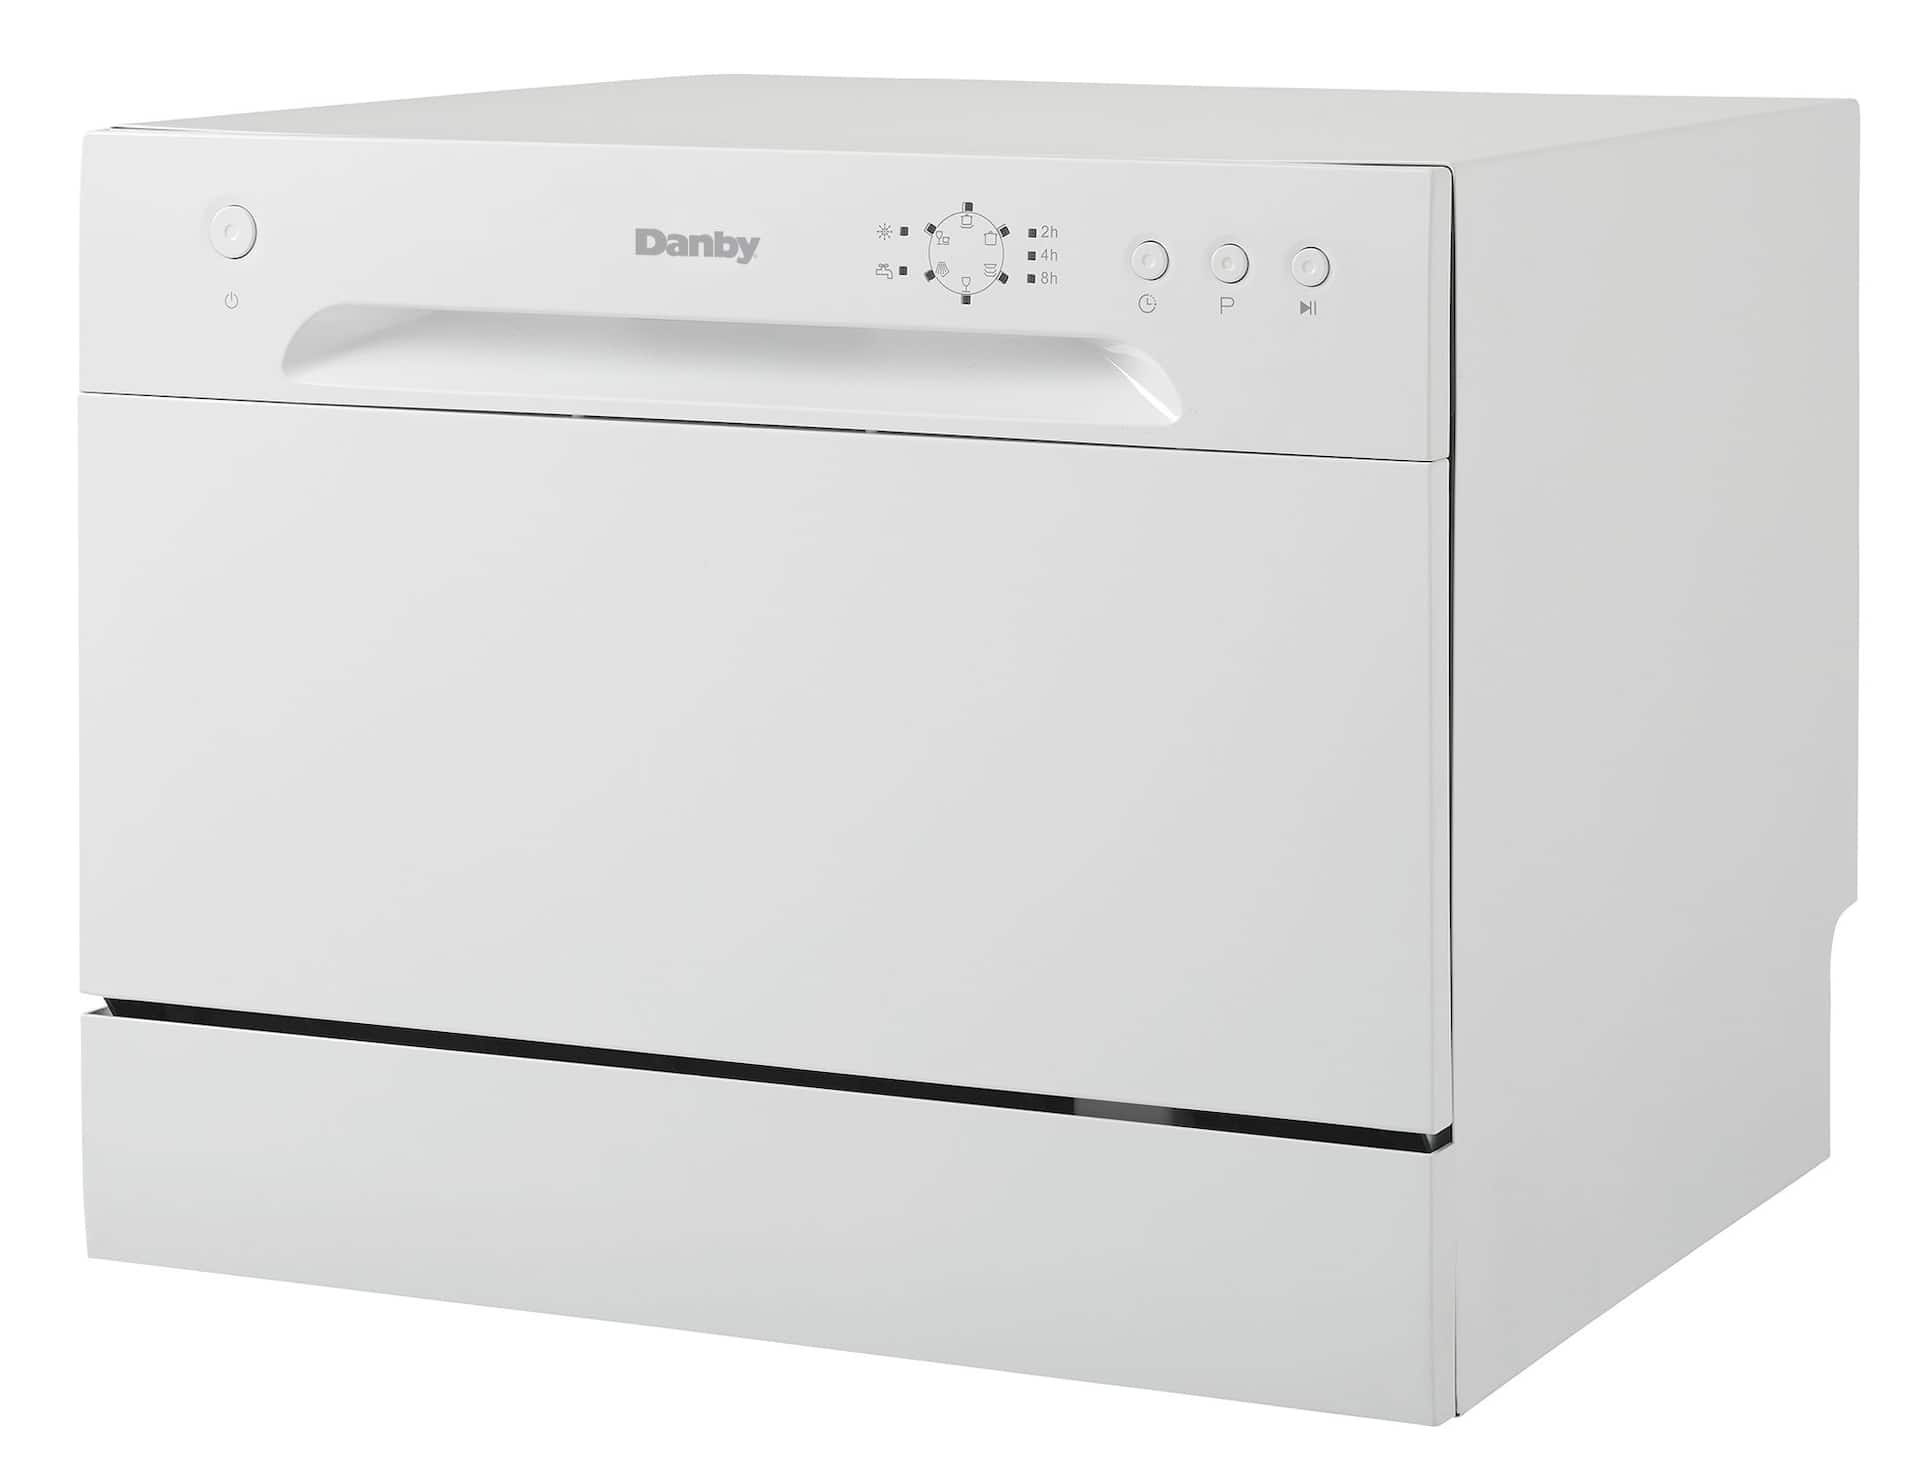 Danby 6 Place Setting Countertop Dishwasher White DDW621WDB